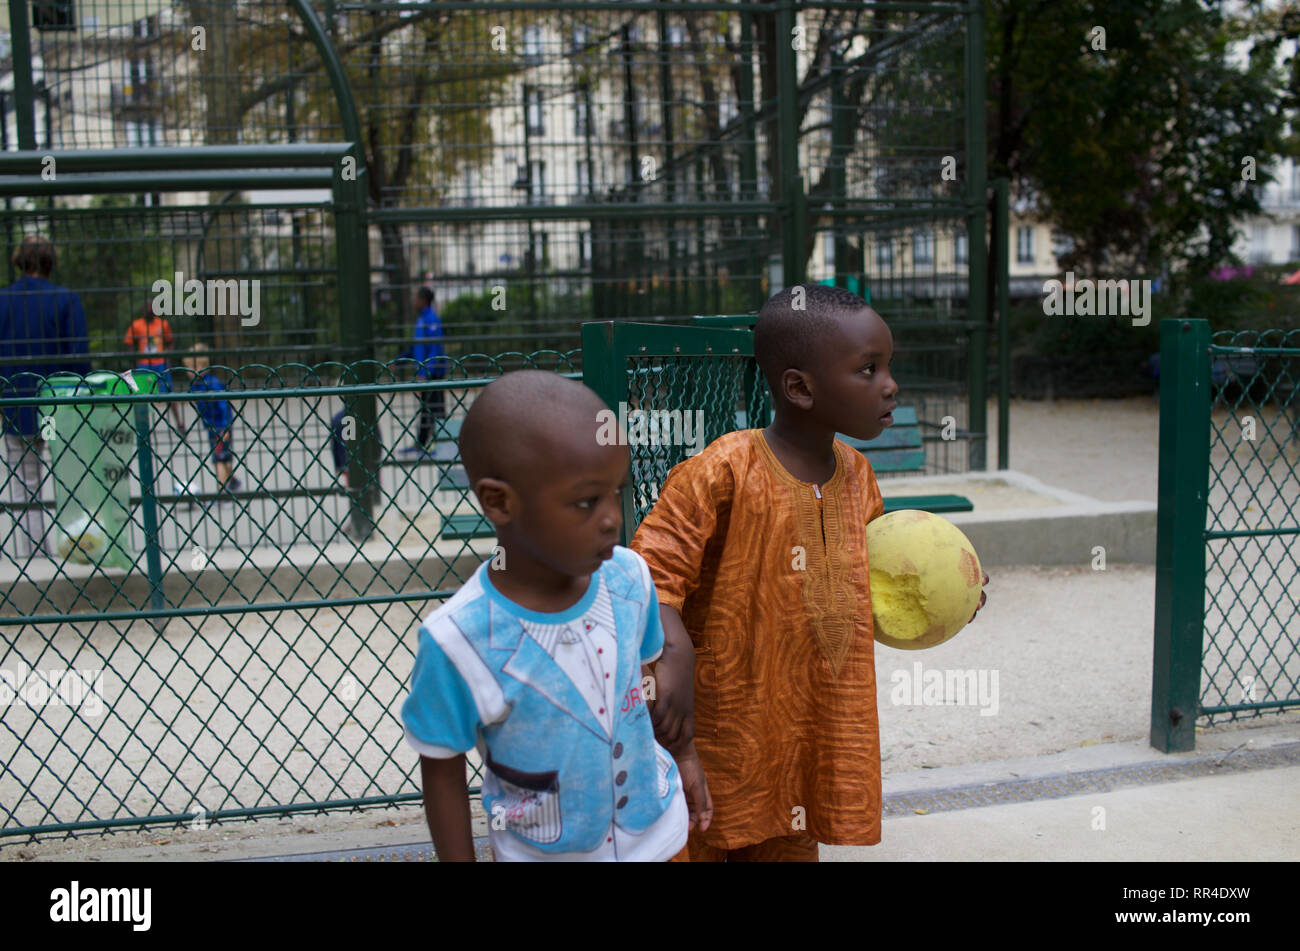 Les enfants français d'origine africaine, frères, de vêtements traditionnels chemise garçon dashiki, éponge holding ball, Square de Maubeuge, 75009, Paris, France Banque D'Images